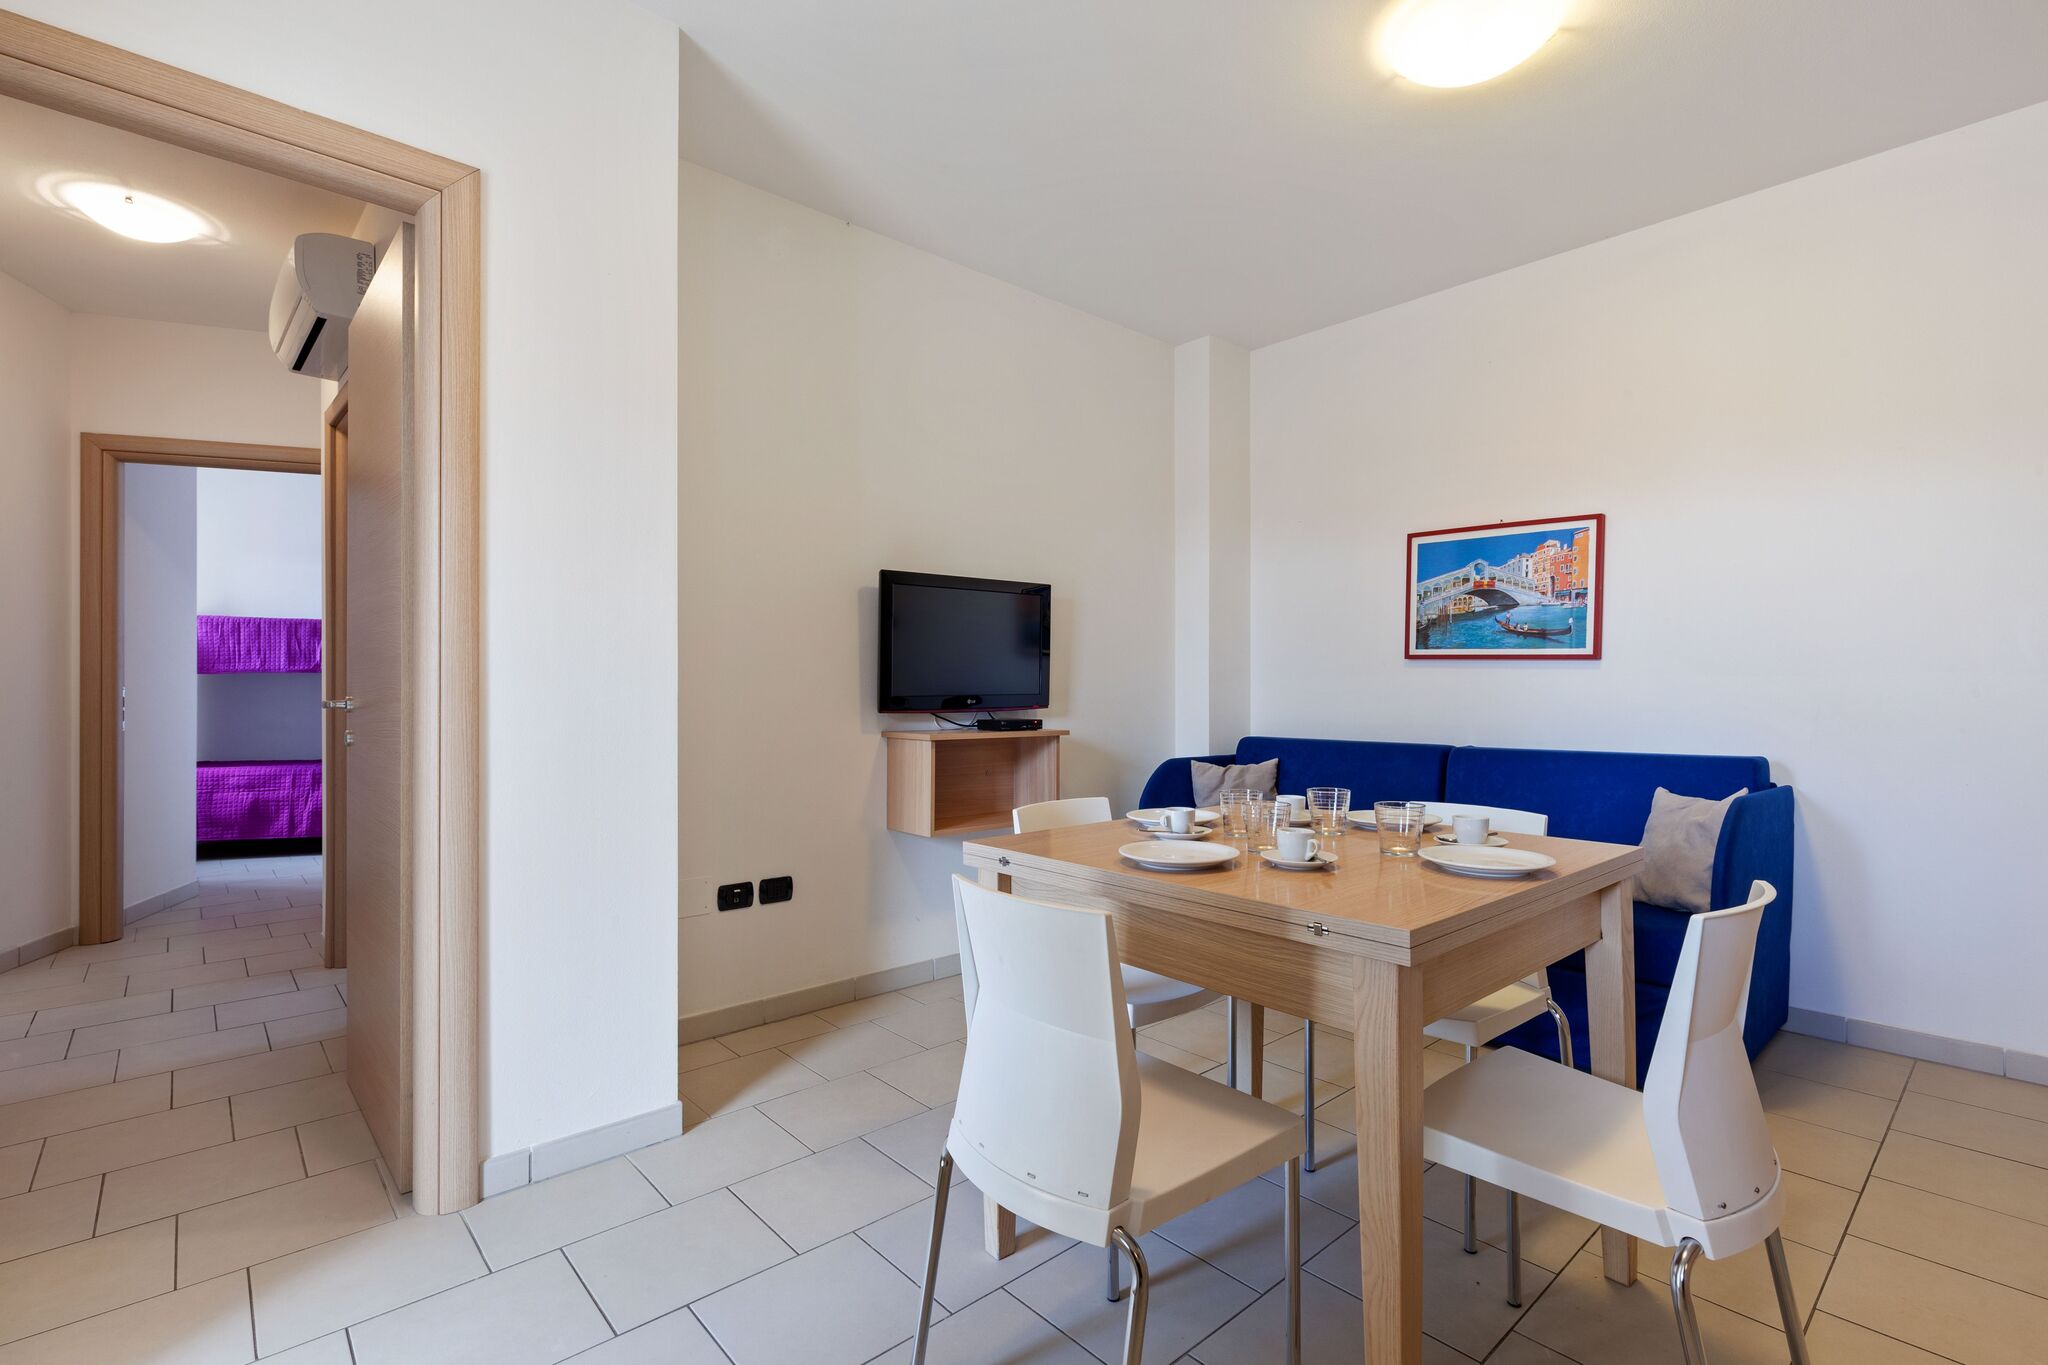 Appartement moderne situé près de la mer à Rosolina Mare